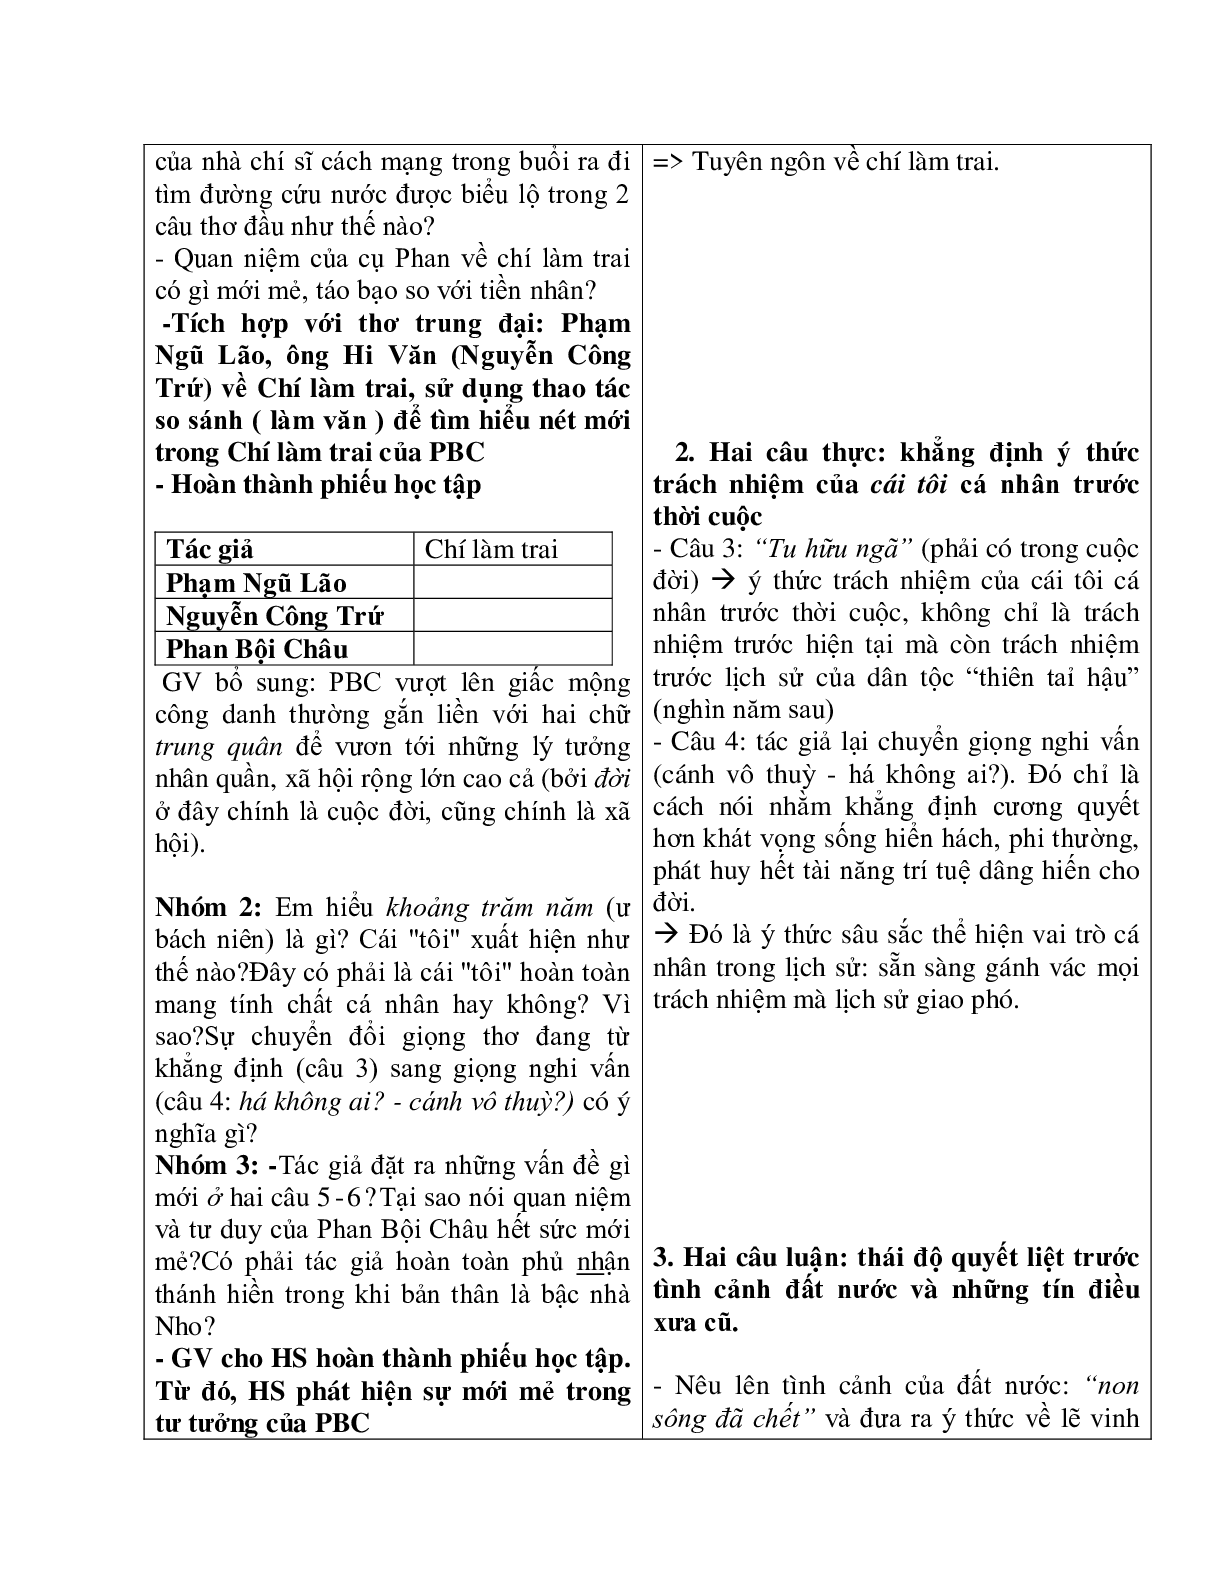 Giáo án Ngữ Văn 11: Tiết 73 lưu biệt khi xuất dương mới nhất (trang 5)